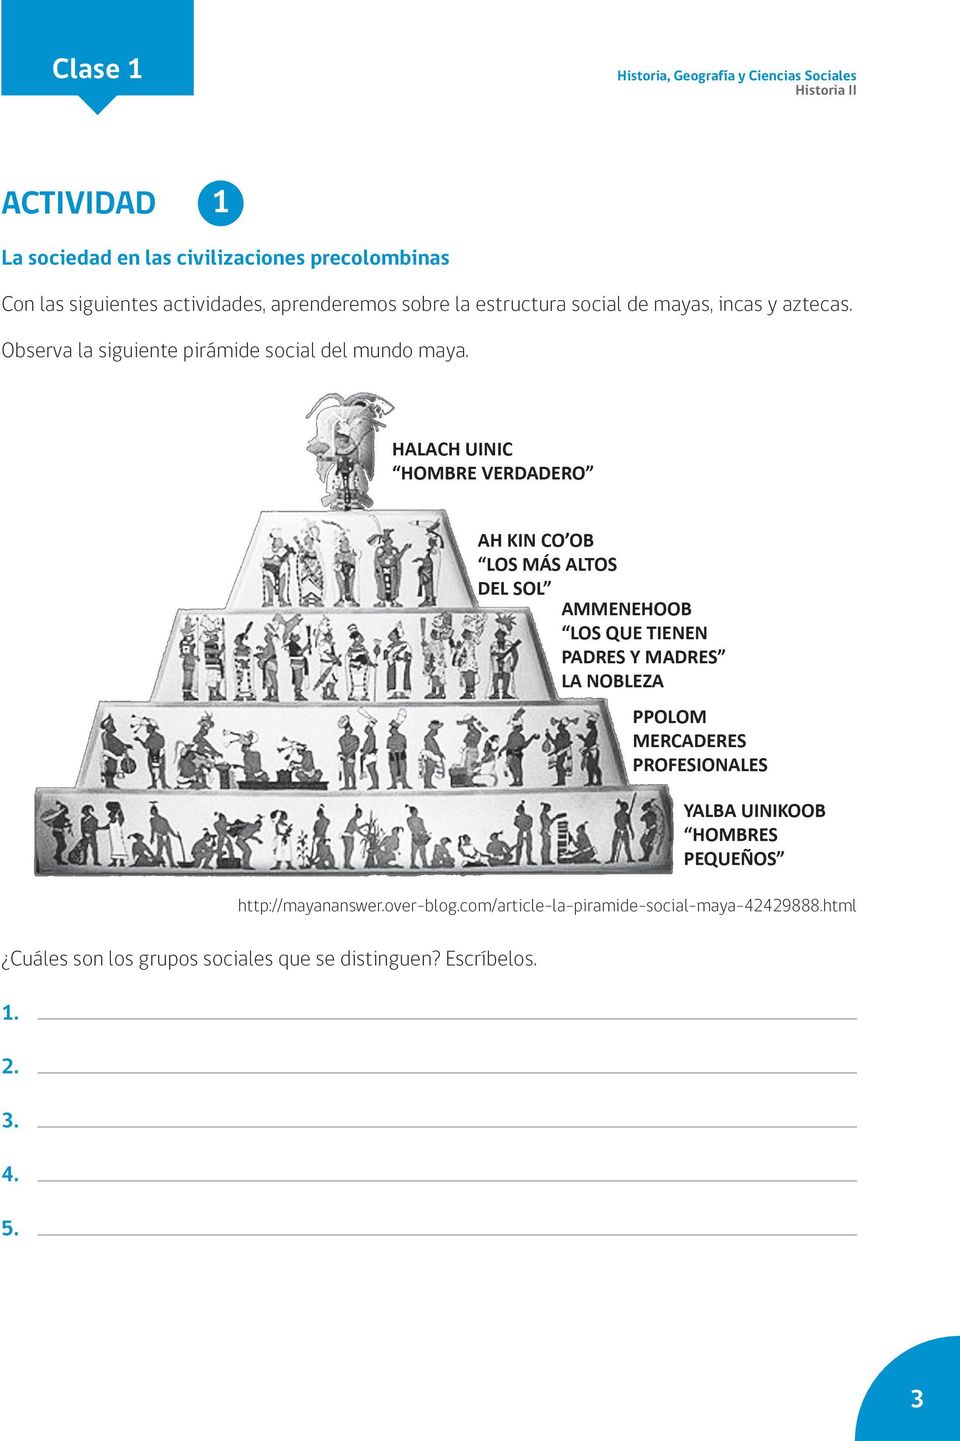 la siguiente pirámide social del mundo maya